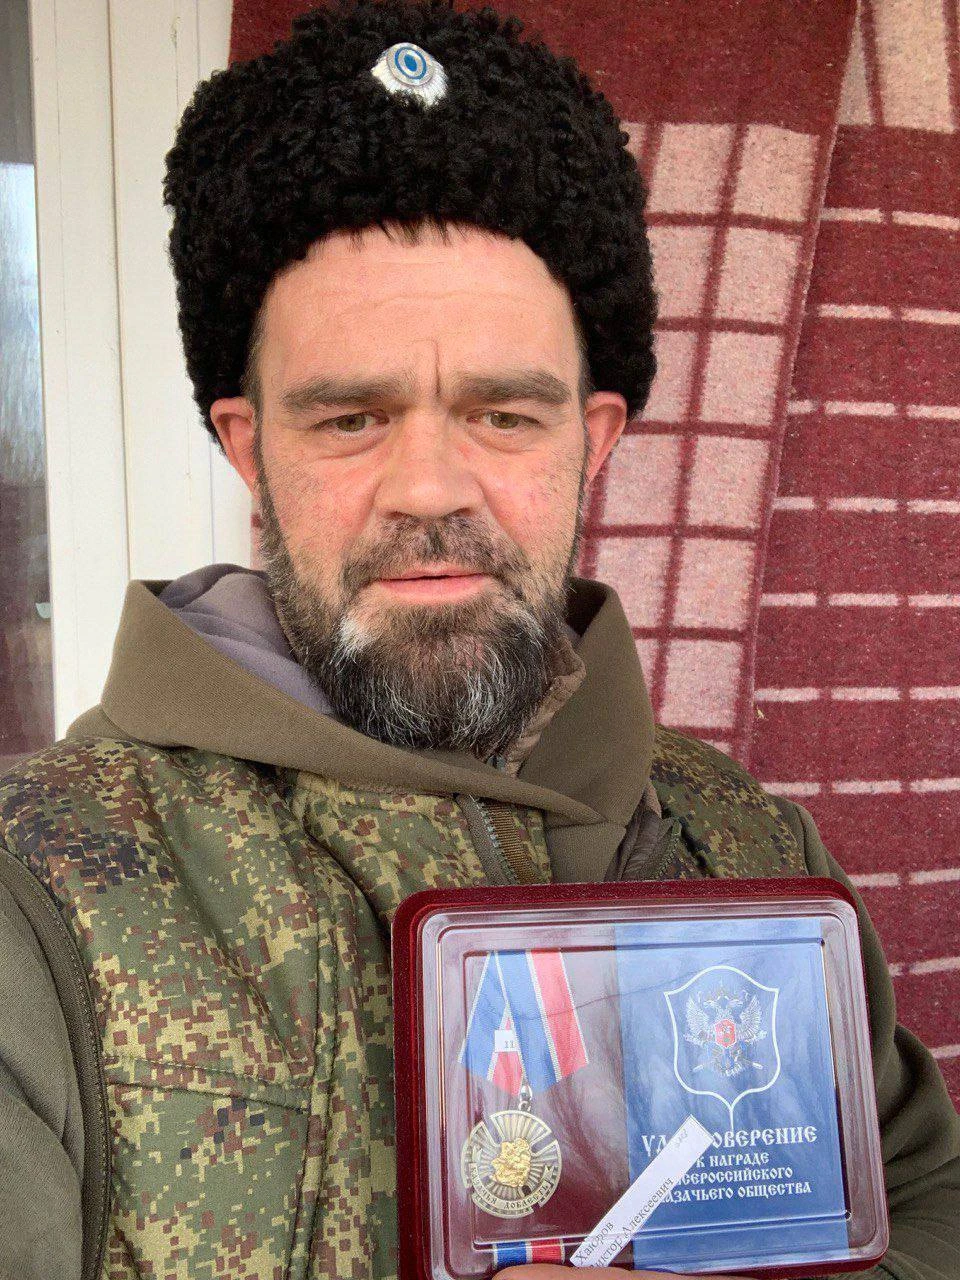 Астраханец награждён нагрудным крестом "Казачья доблесть"